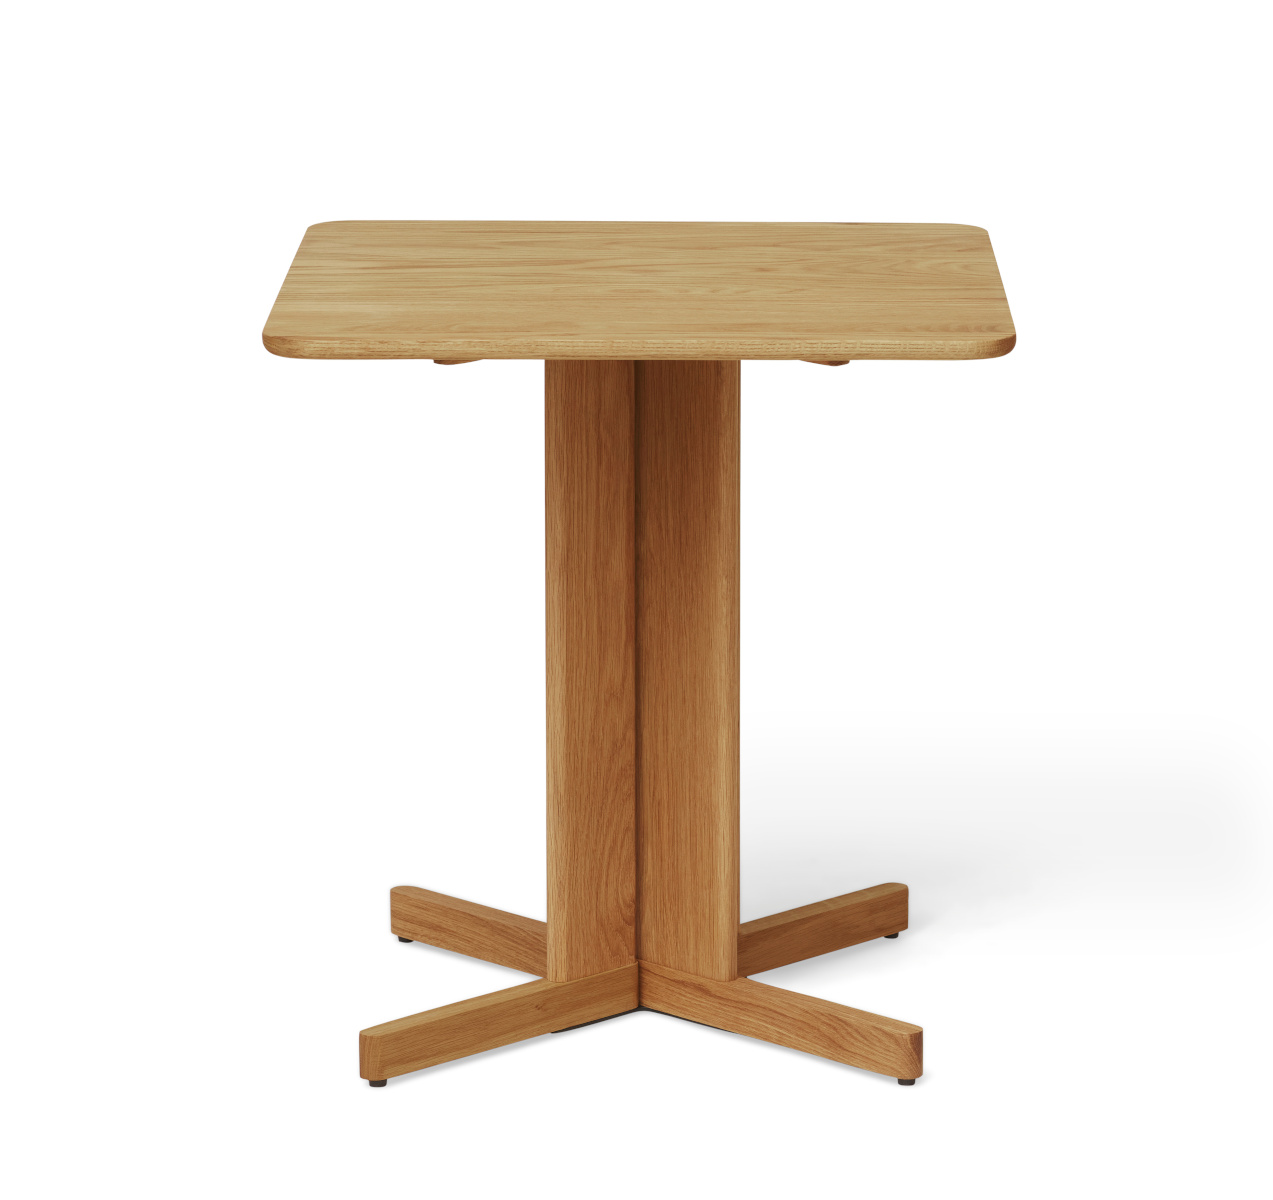 Trefoil Tisch, Ø 75 cm, eiche weiß geölt